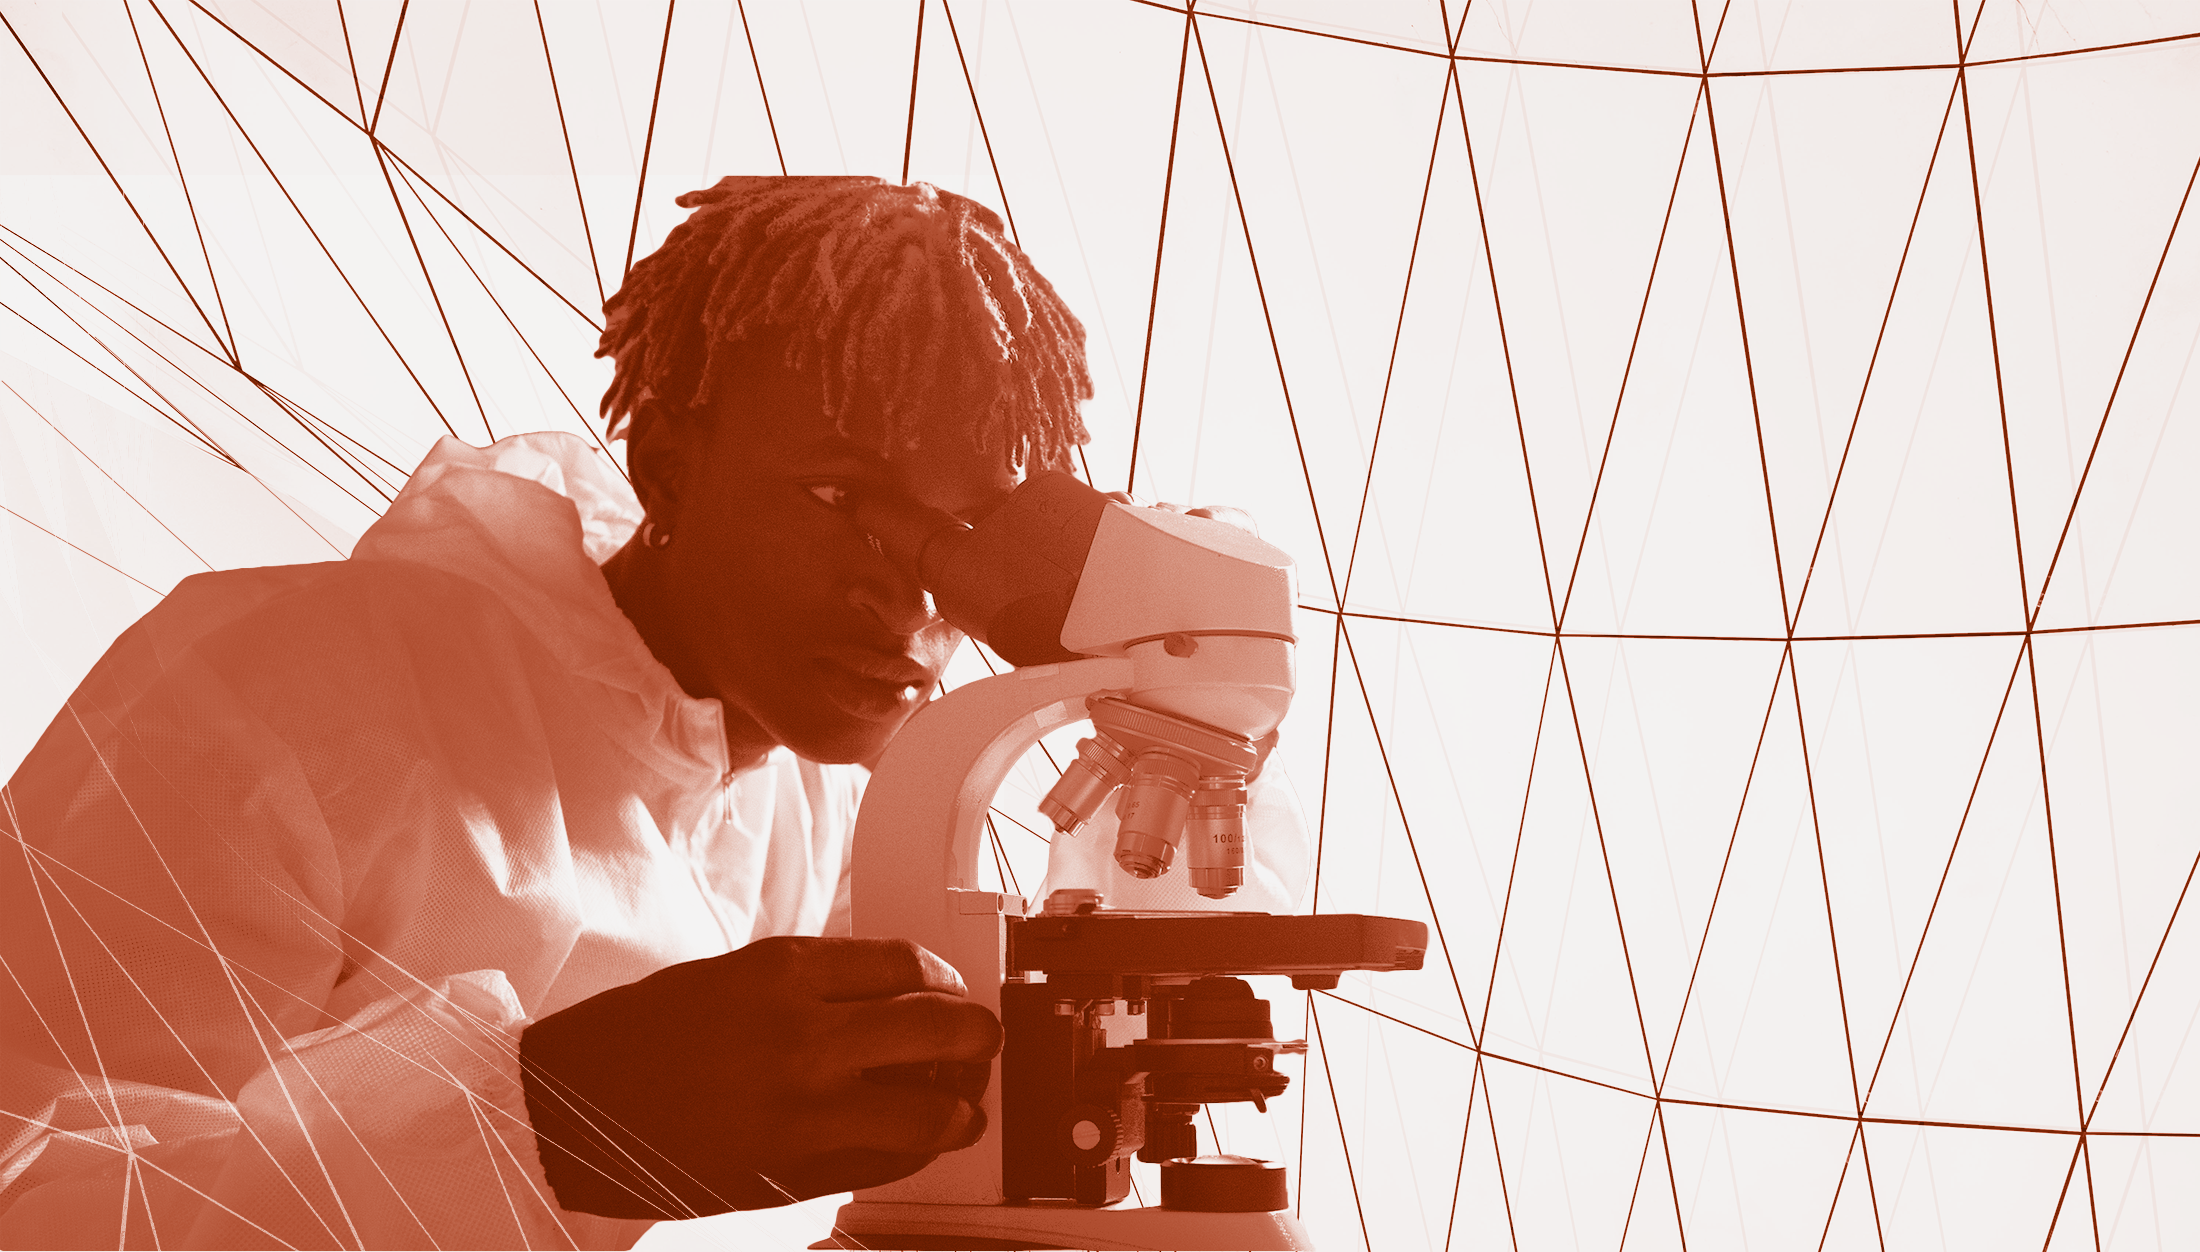 A black man looks through a microscope